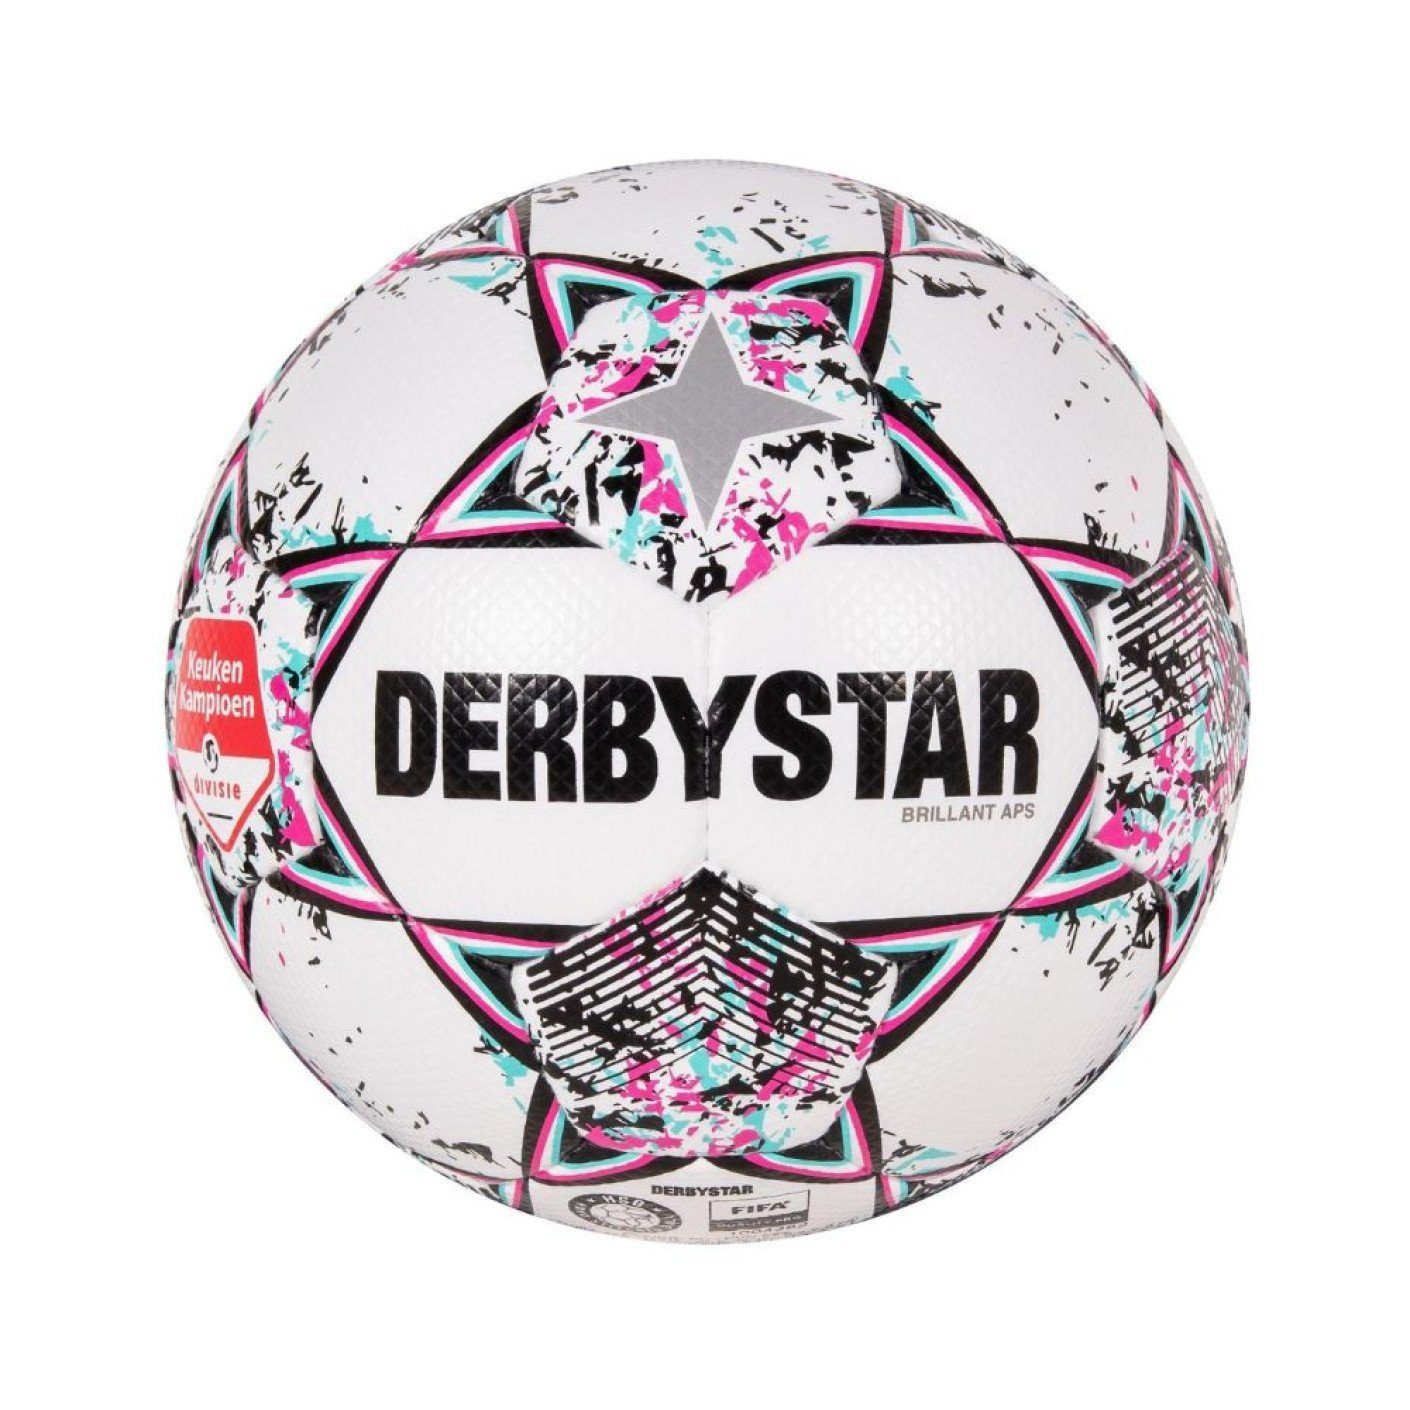 Derbystar Fußball Brillant APS KEUKEN (holländische Erendivise) - Spielball / Matchball